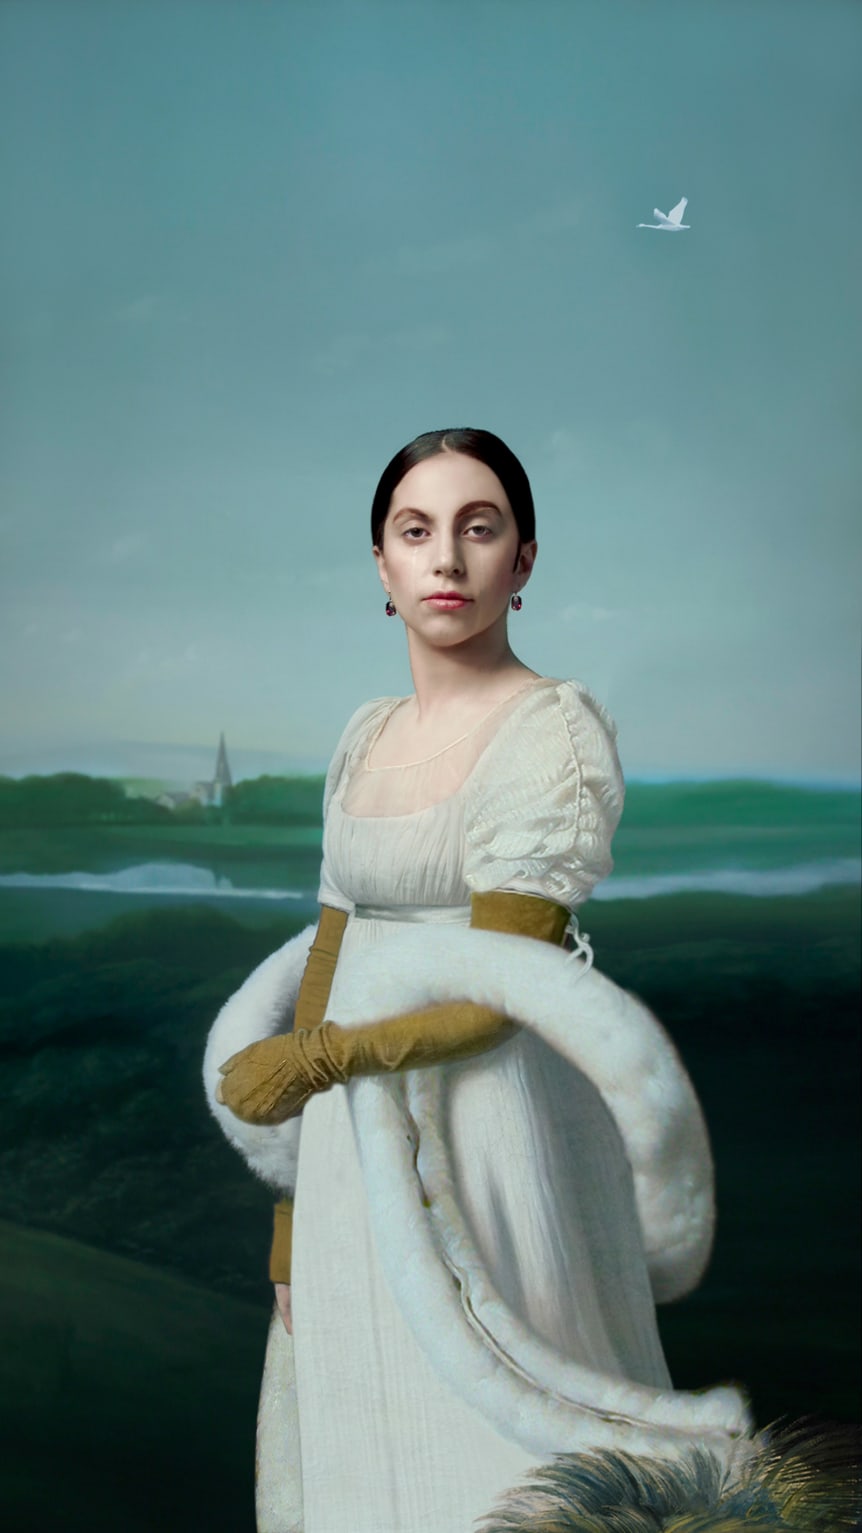 Премьера этого портрета Леди Гаги состоялась в Лувре в Париже в 2013 году.